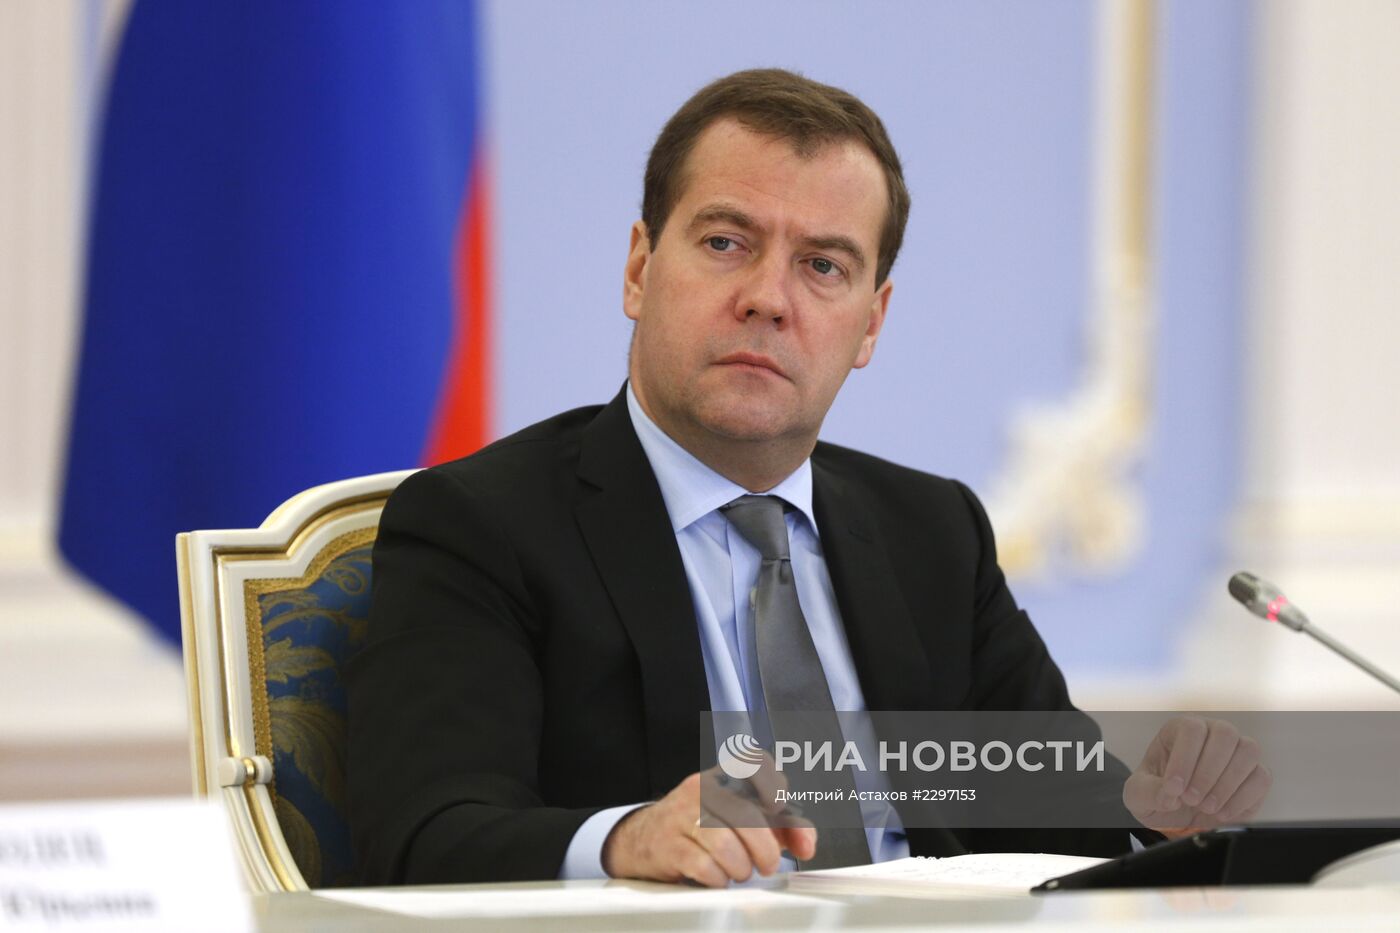 Д.Медведев встретился с предпринимателями в социальной сфере